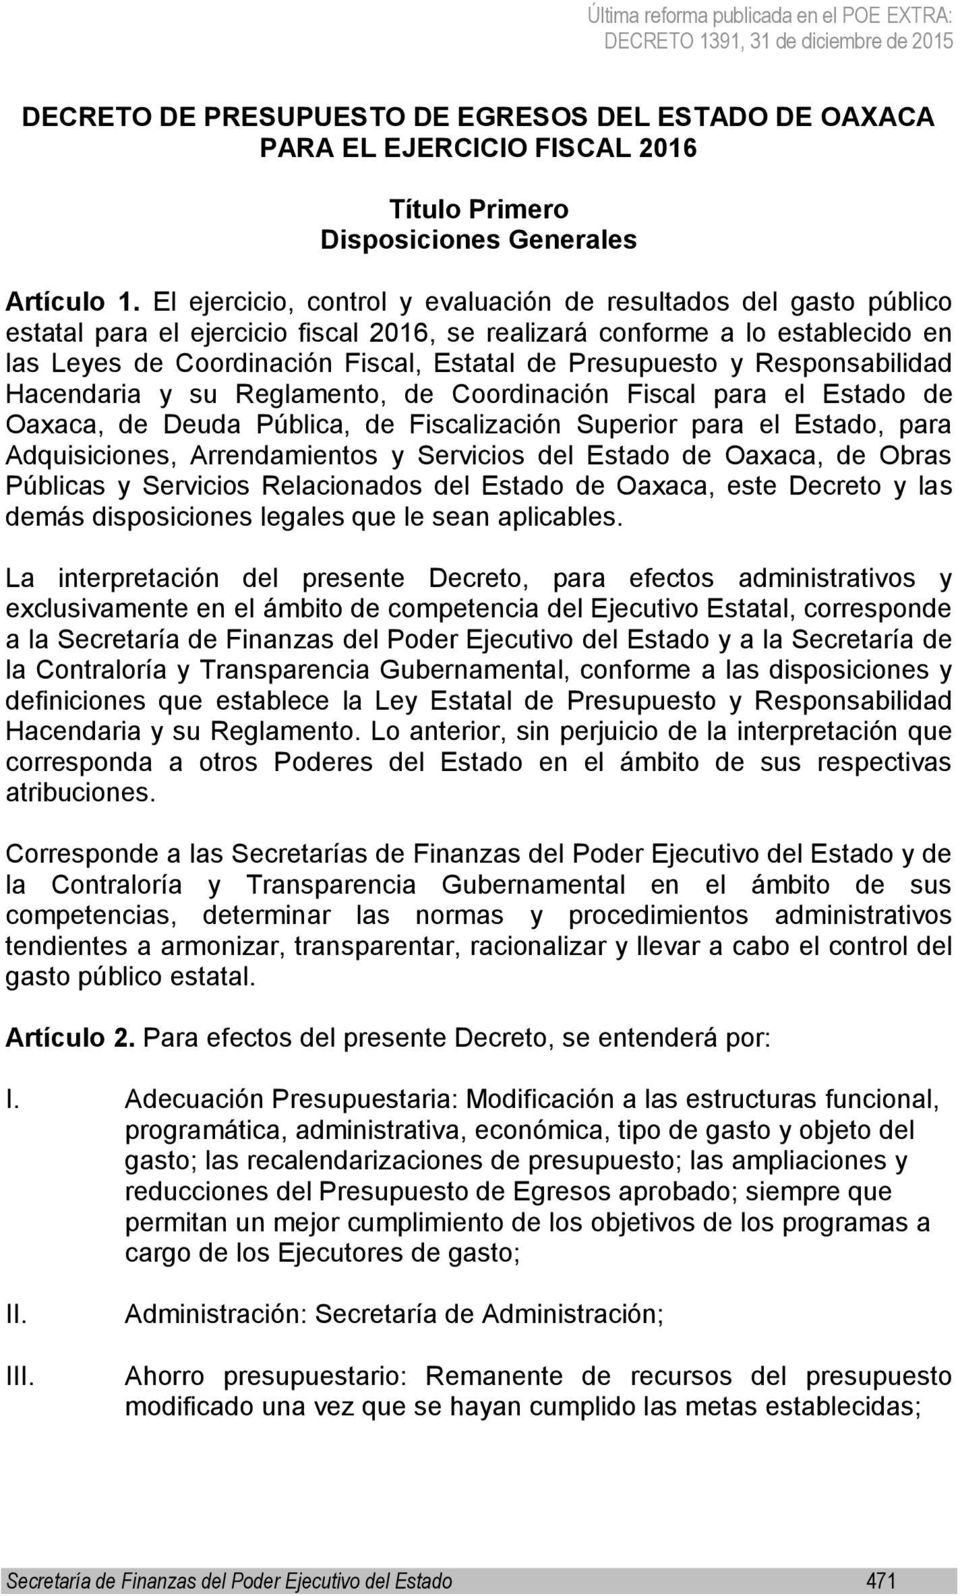 Presupuesto y Responsabilidad Hacendaria y su Reglamento, de Coordinación Fiscal para el Estado de Oaxaca, de Deuda Pública, de Fiscalización Superior para el Estado, para Adquisiciones,